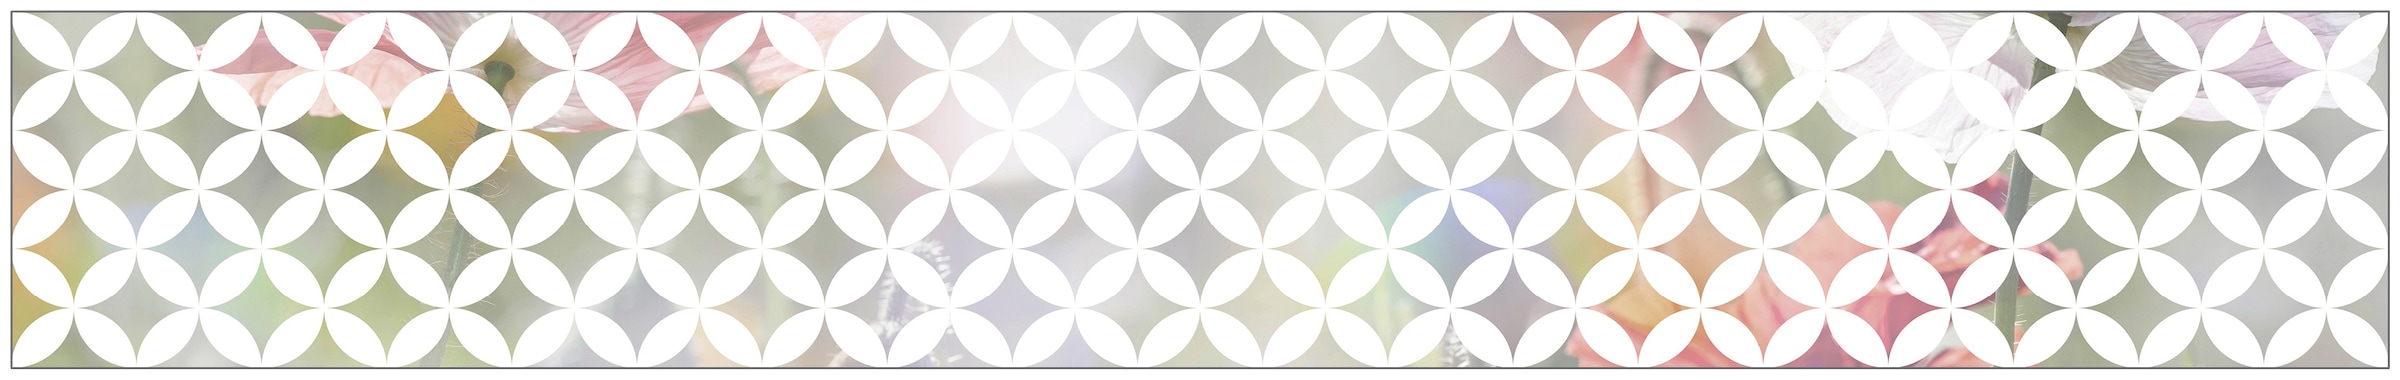 MySpotti Fensterfolie »Look Chadi white«, halbtransparent, glattstatisch haftend, 200 x 30 cm, statisch haftend